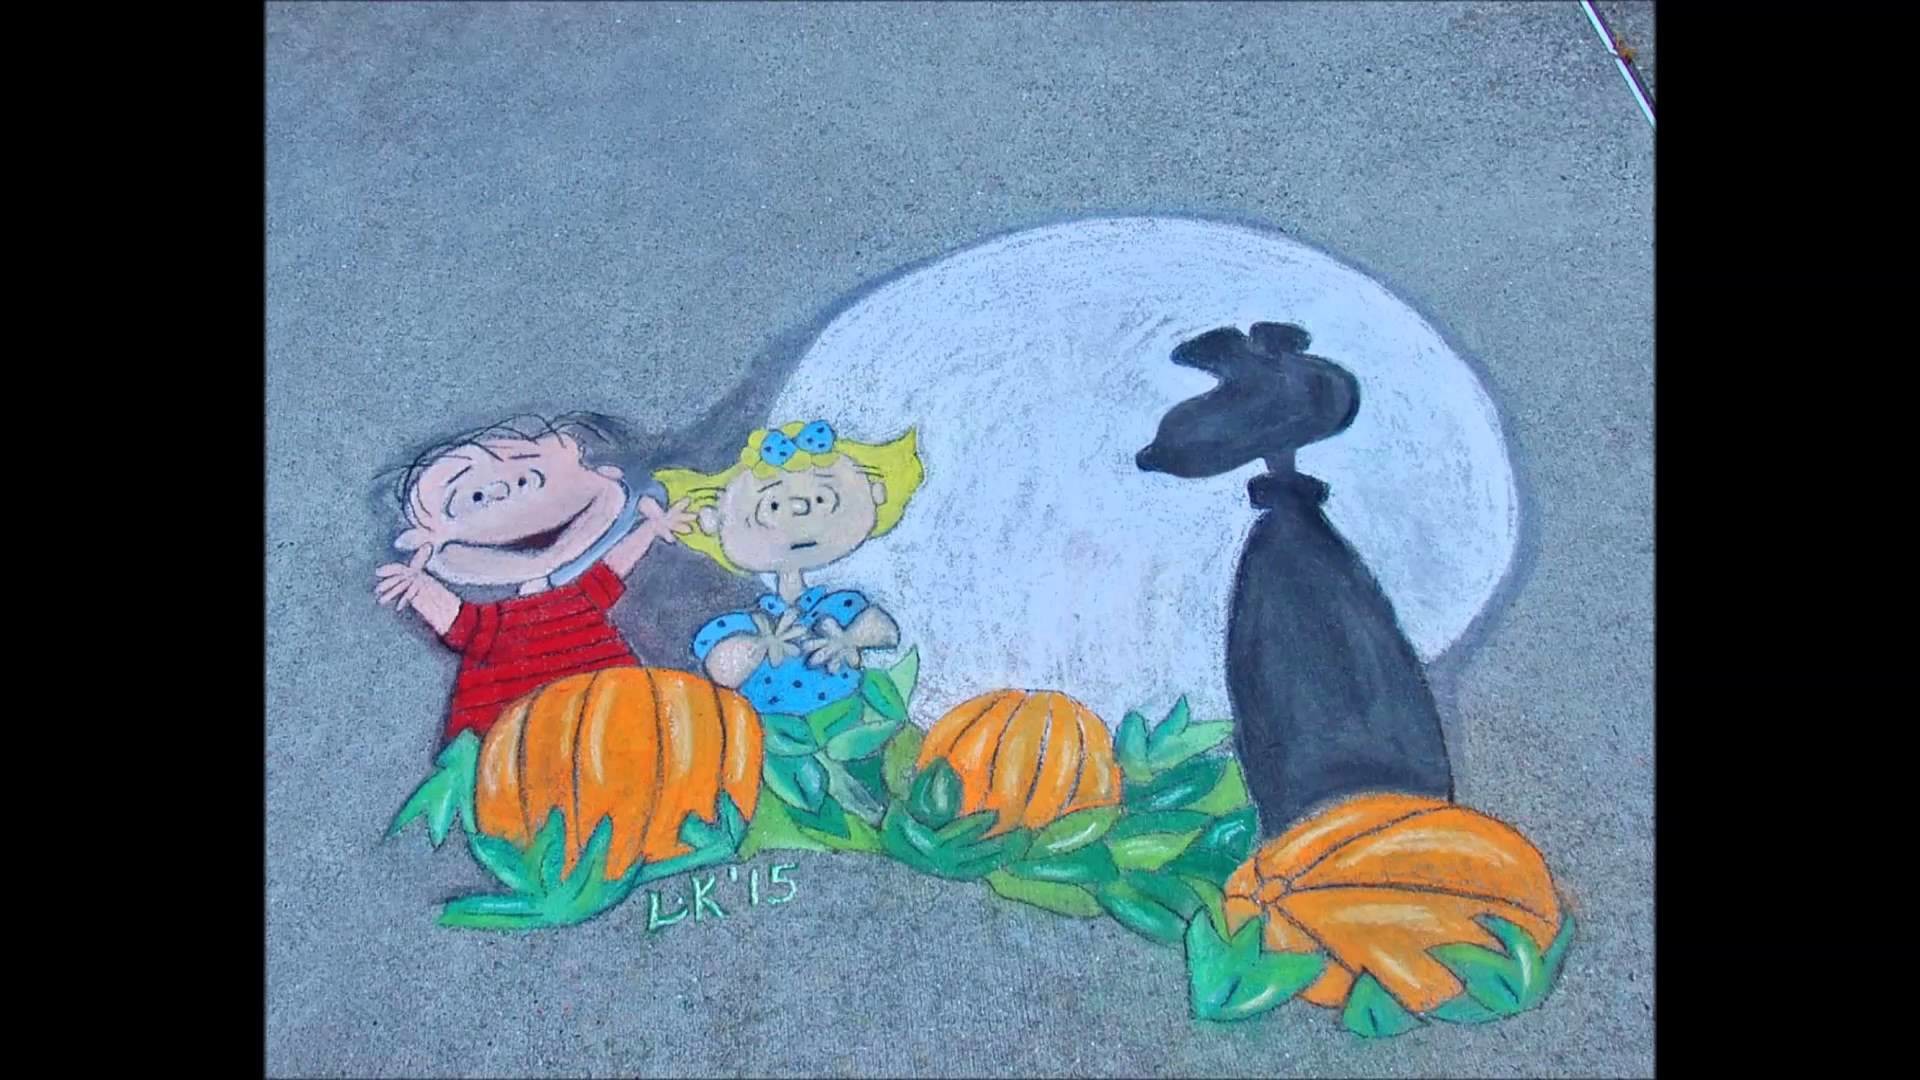 1920x1080 Chalk Art Progression Video (It's The Great Pumpkin Charlie Brown)